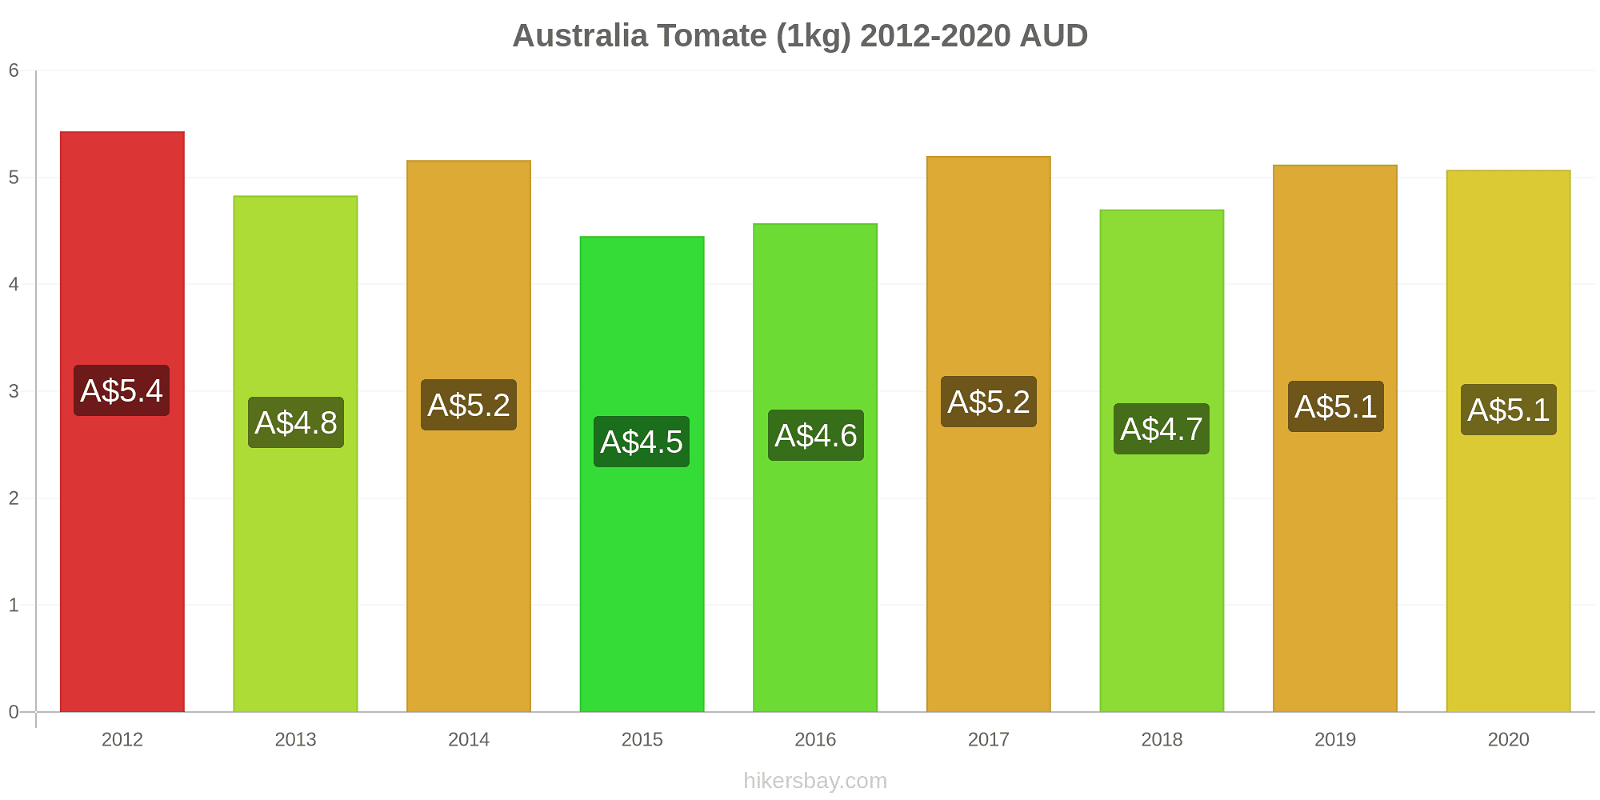 Australia cambios de precios Tomate (1kg) hikersbay.com